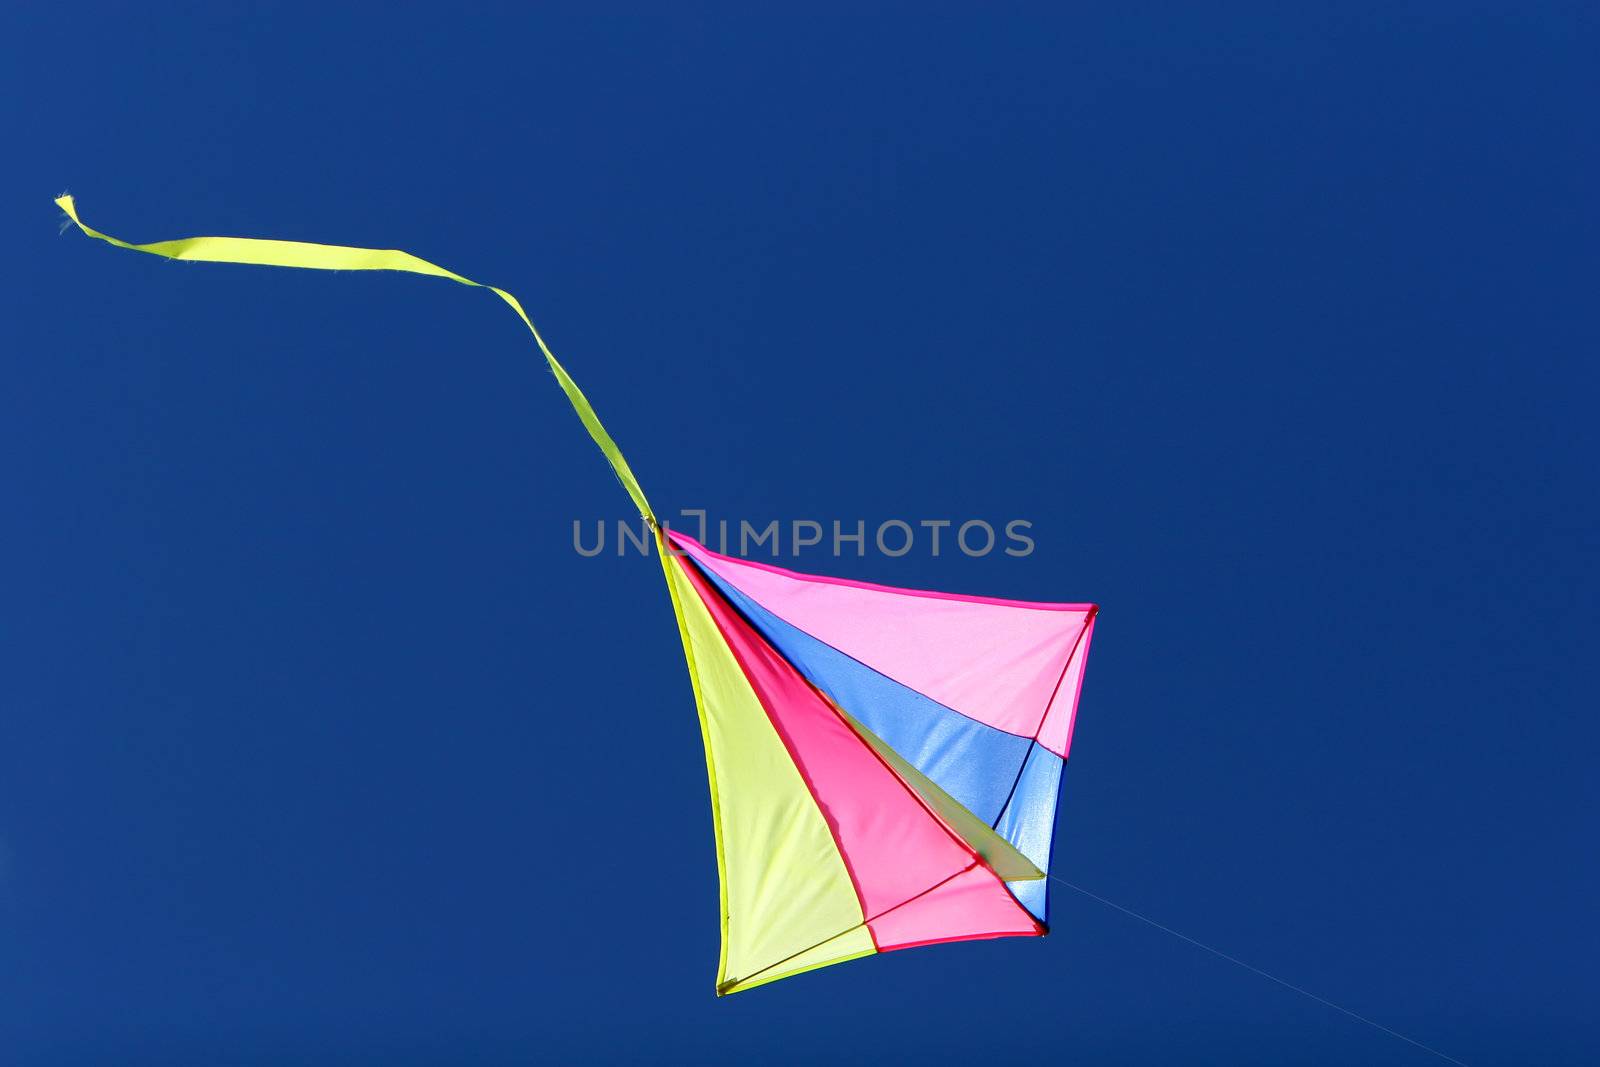 Kite flight by sumos